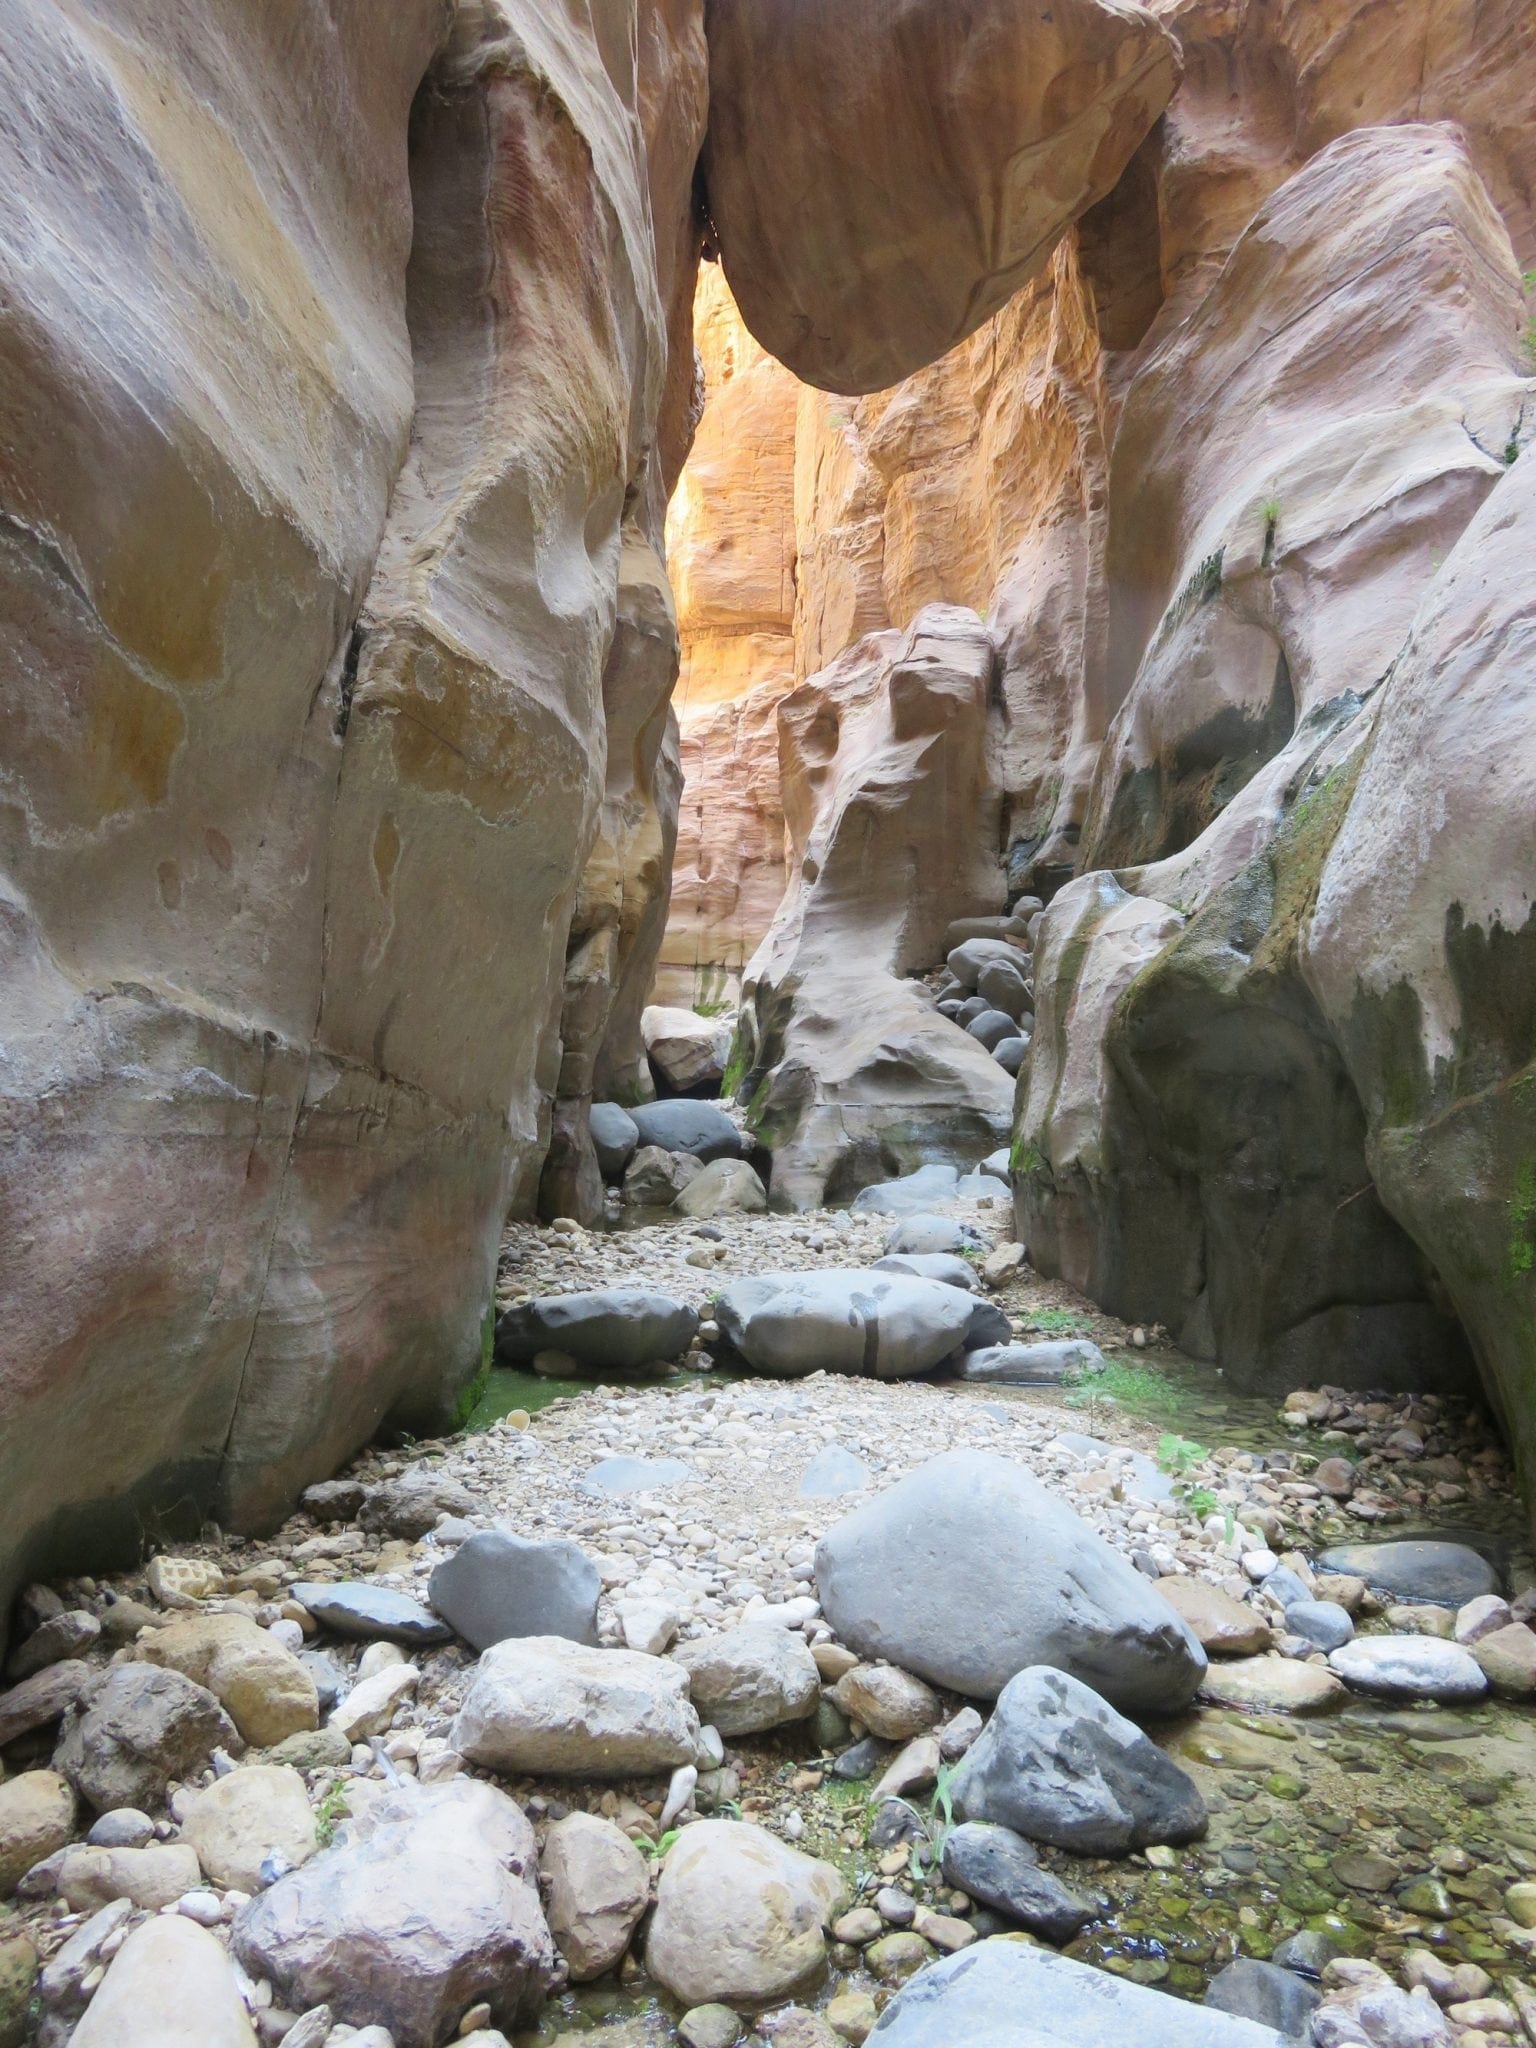 ואדי גוואר - Wadi Ghuweir - ירדן עם ערוצים בטבע